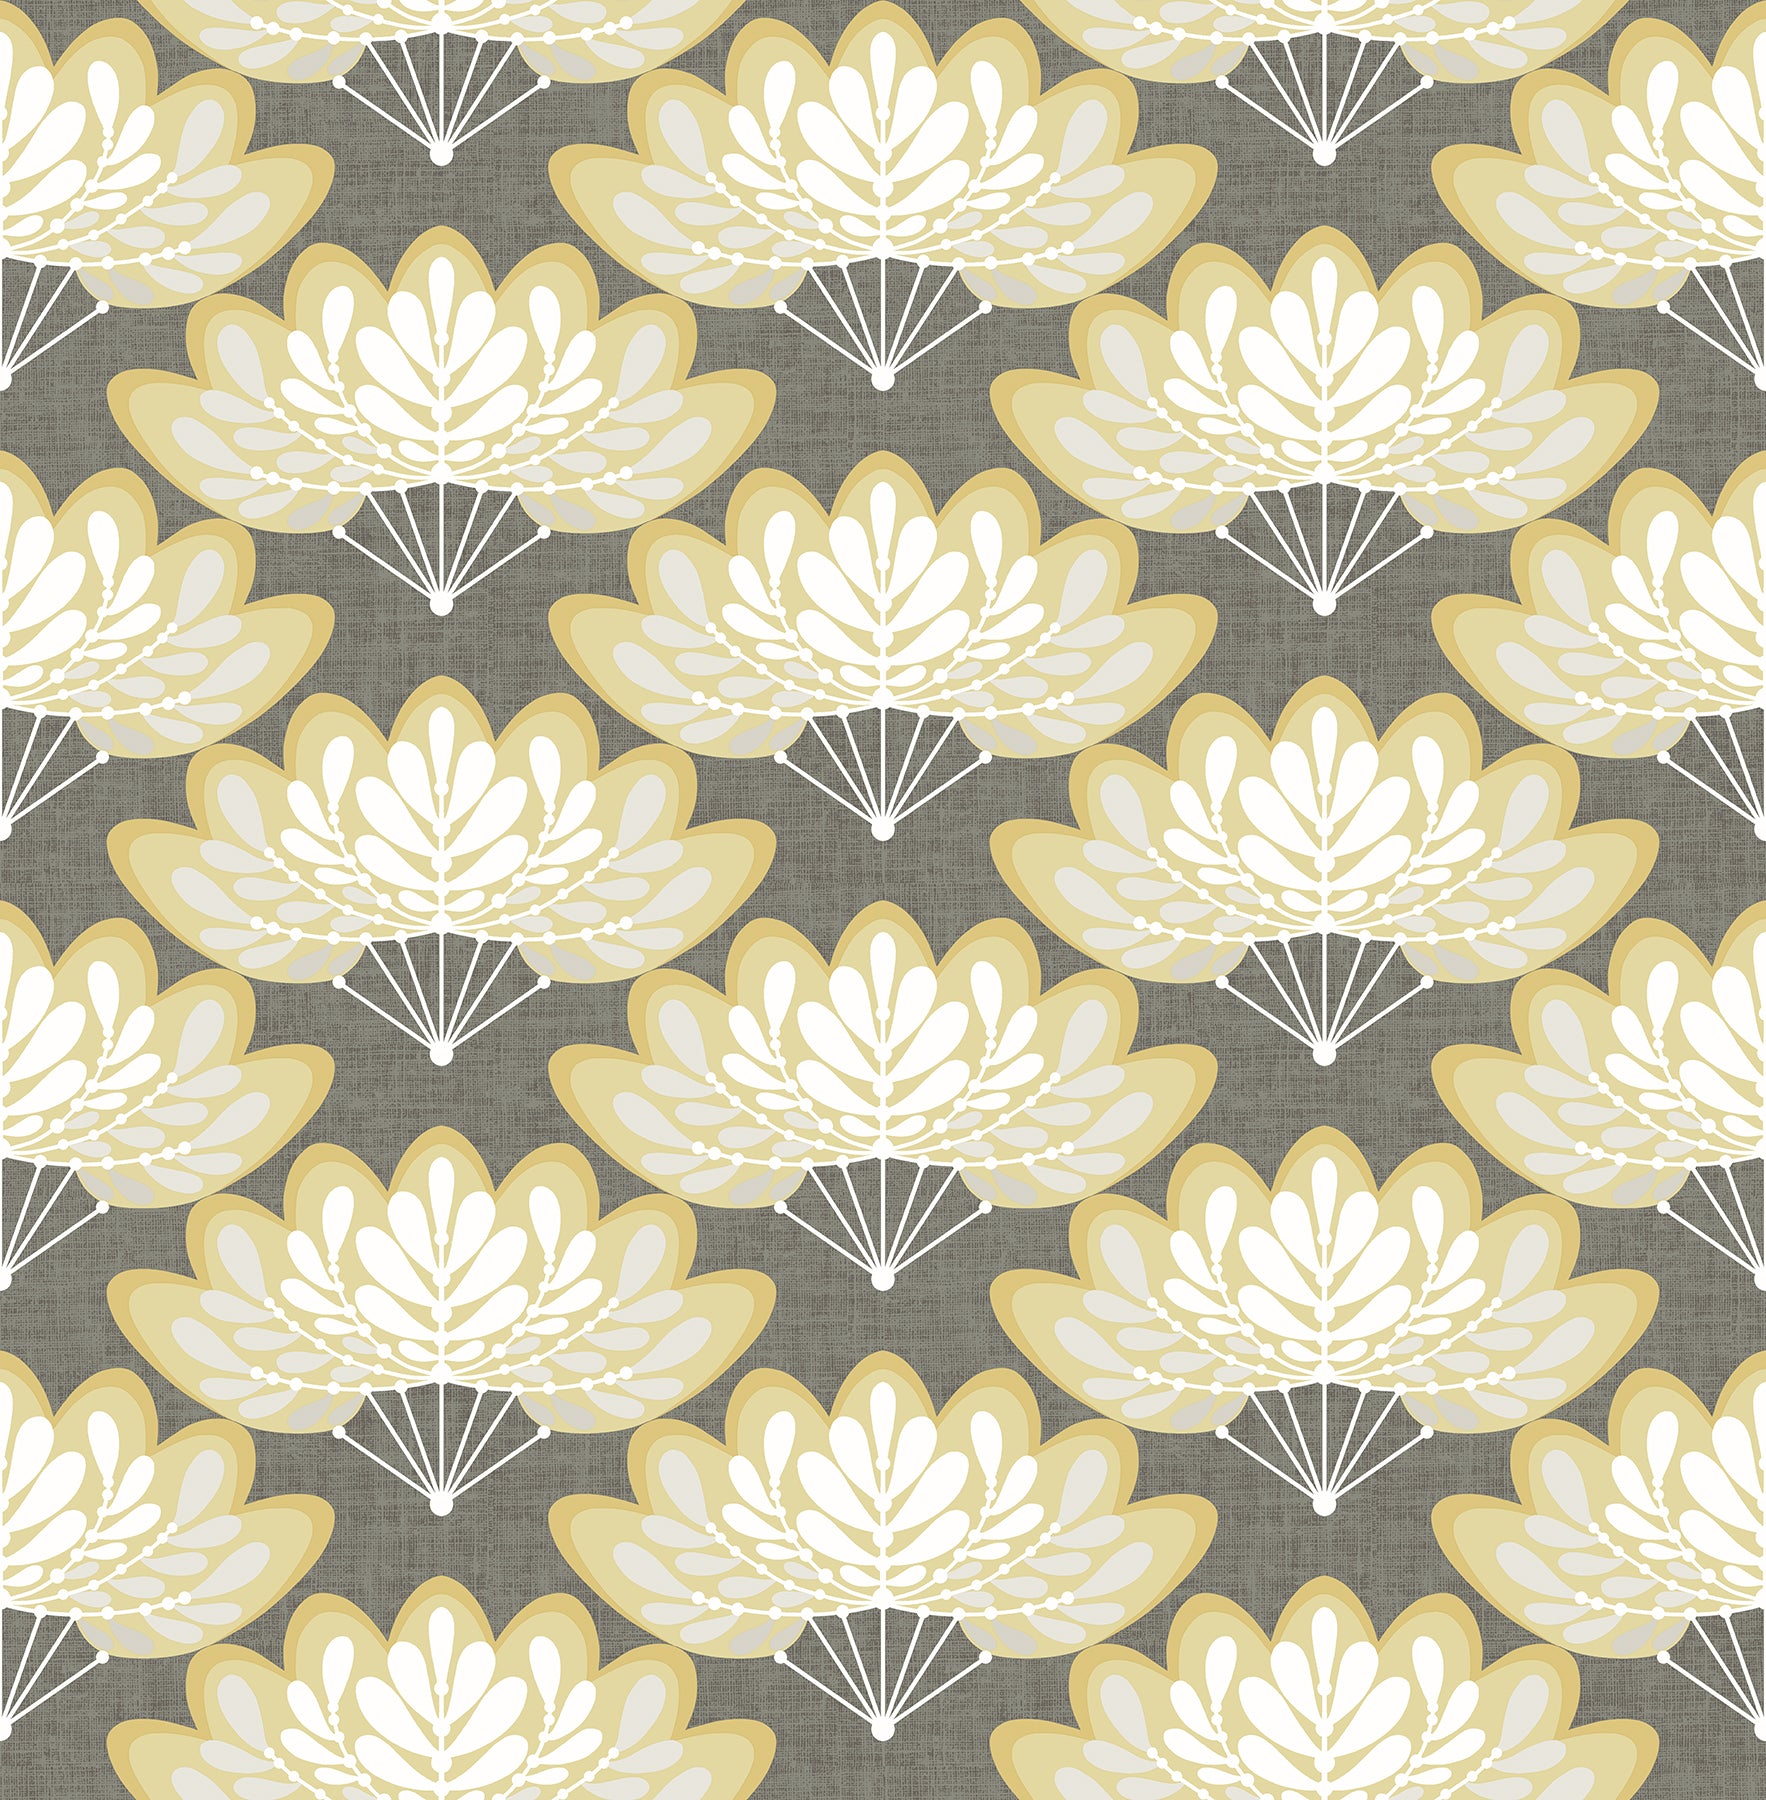 Find 2861-25754 Equinox Lotus Mustard Floral Fans Mustard A-Street Prints Wallpaper